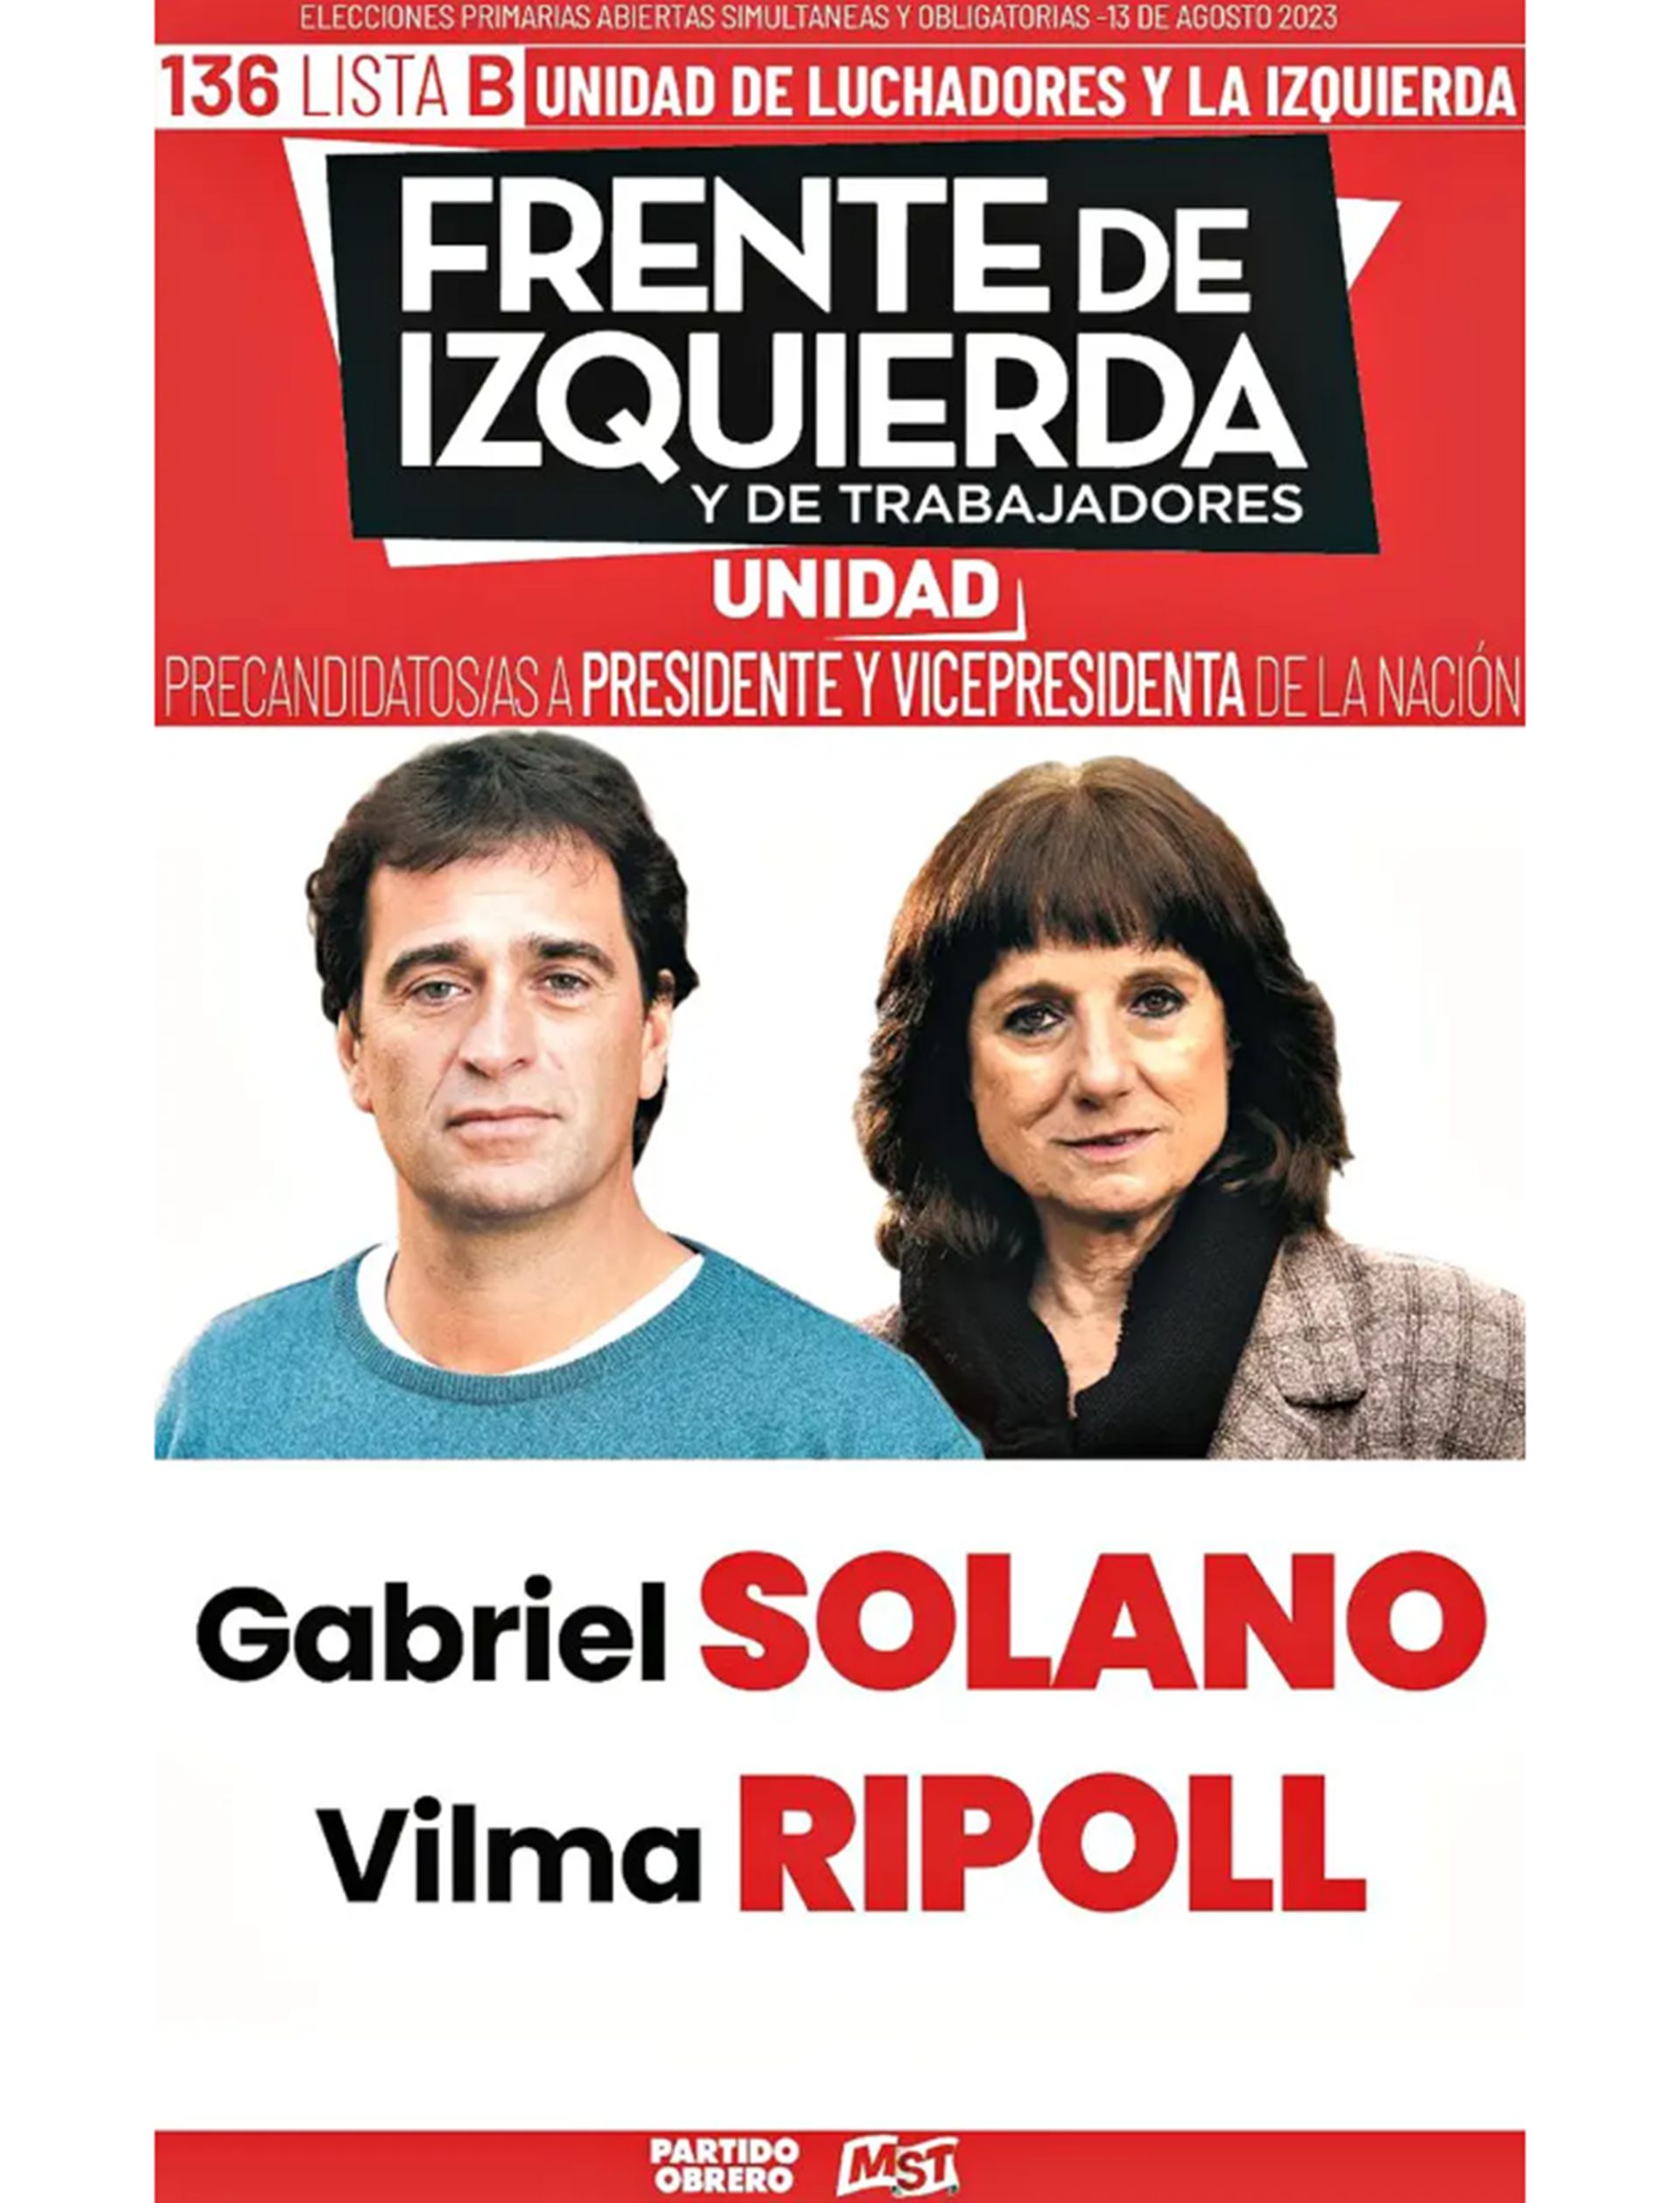 Gabriel Solano, por el Frente de Izquierda (Lista B)